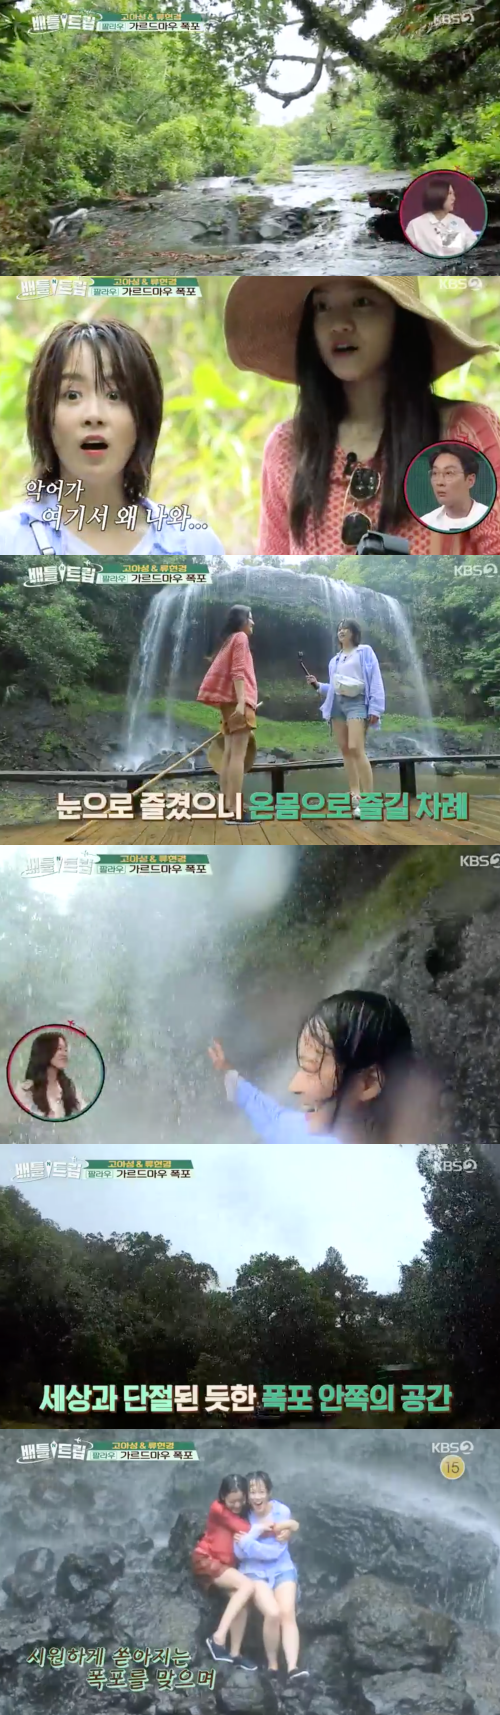 KBS2 ‘배틀트립’ 방송 화면